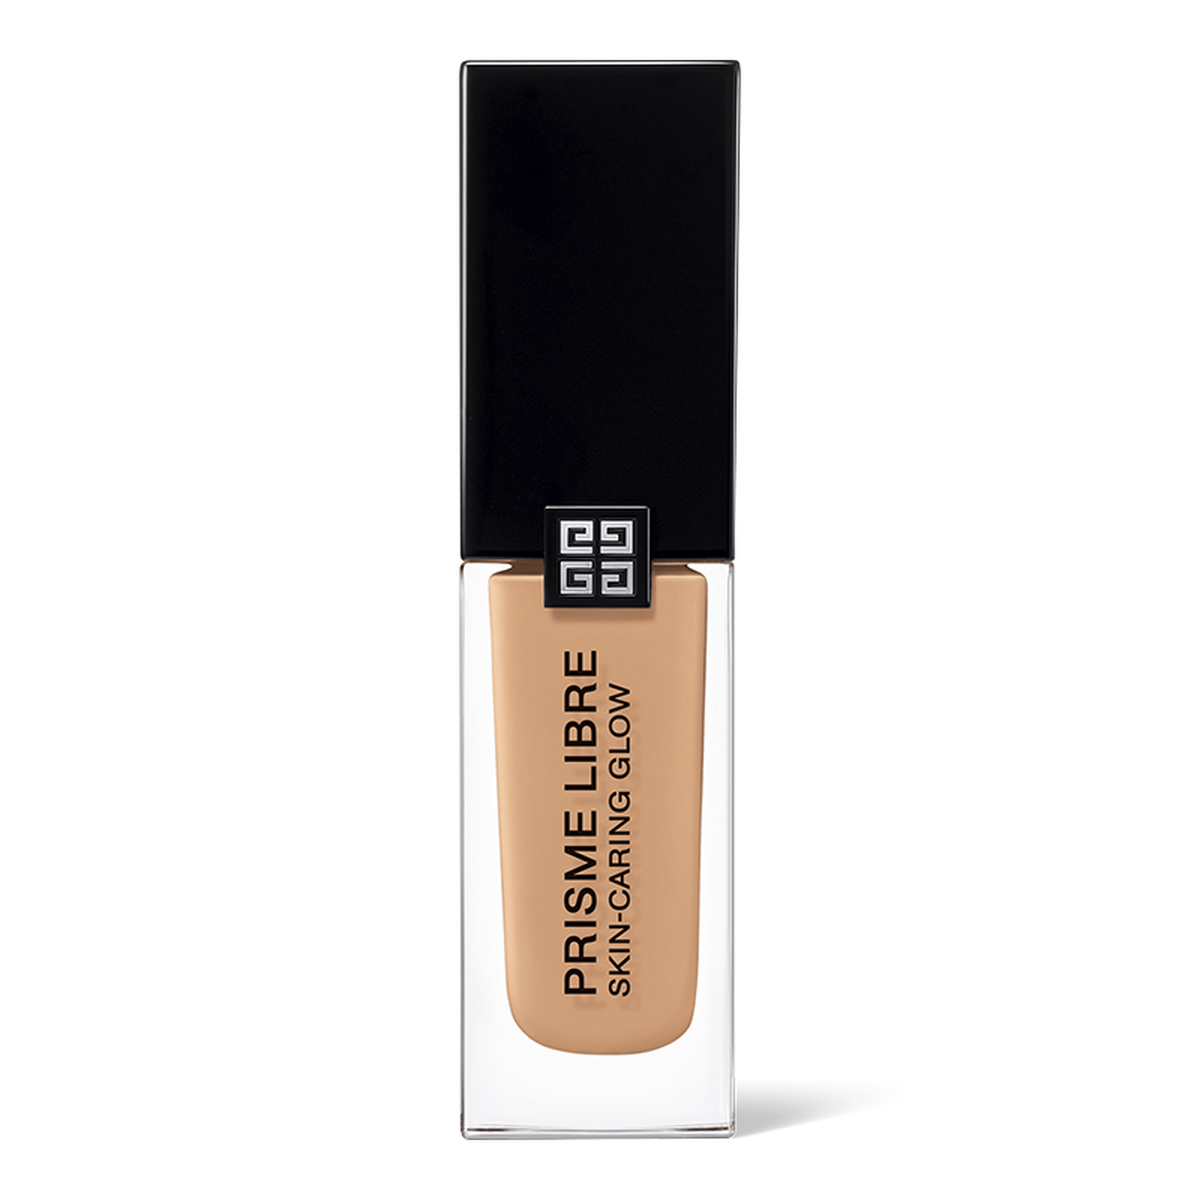 Givenchy Hydratační make-up Prisme Libre Skin-Caring Glow (Foundation) 30 ml 03-W245